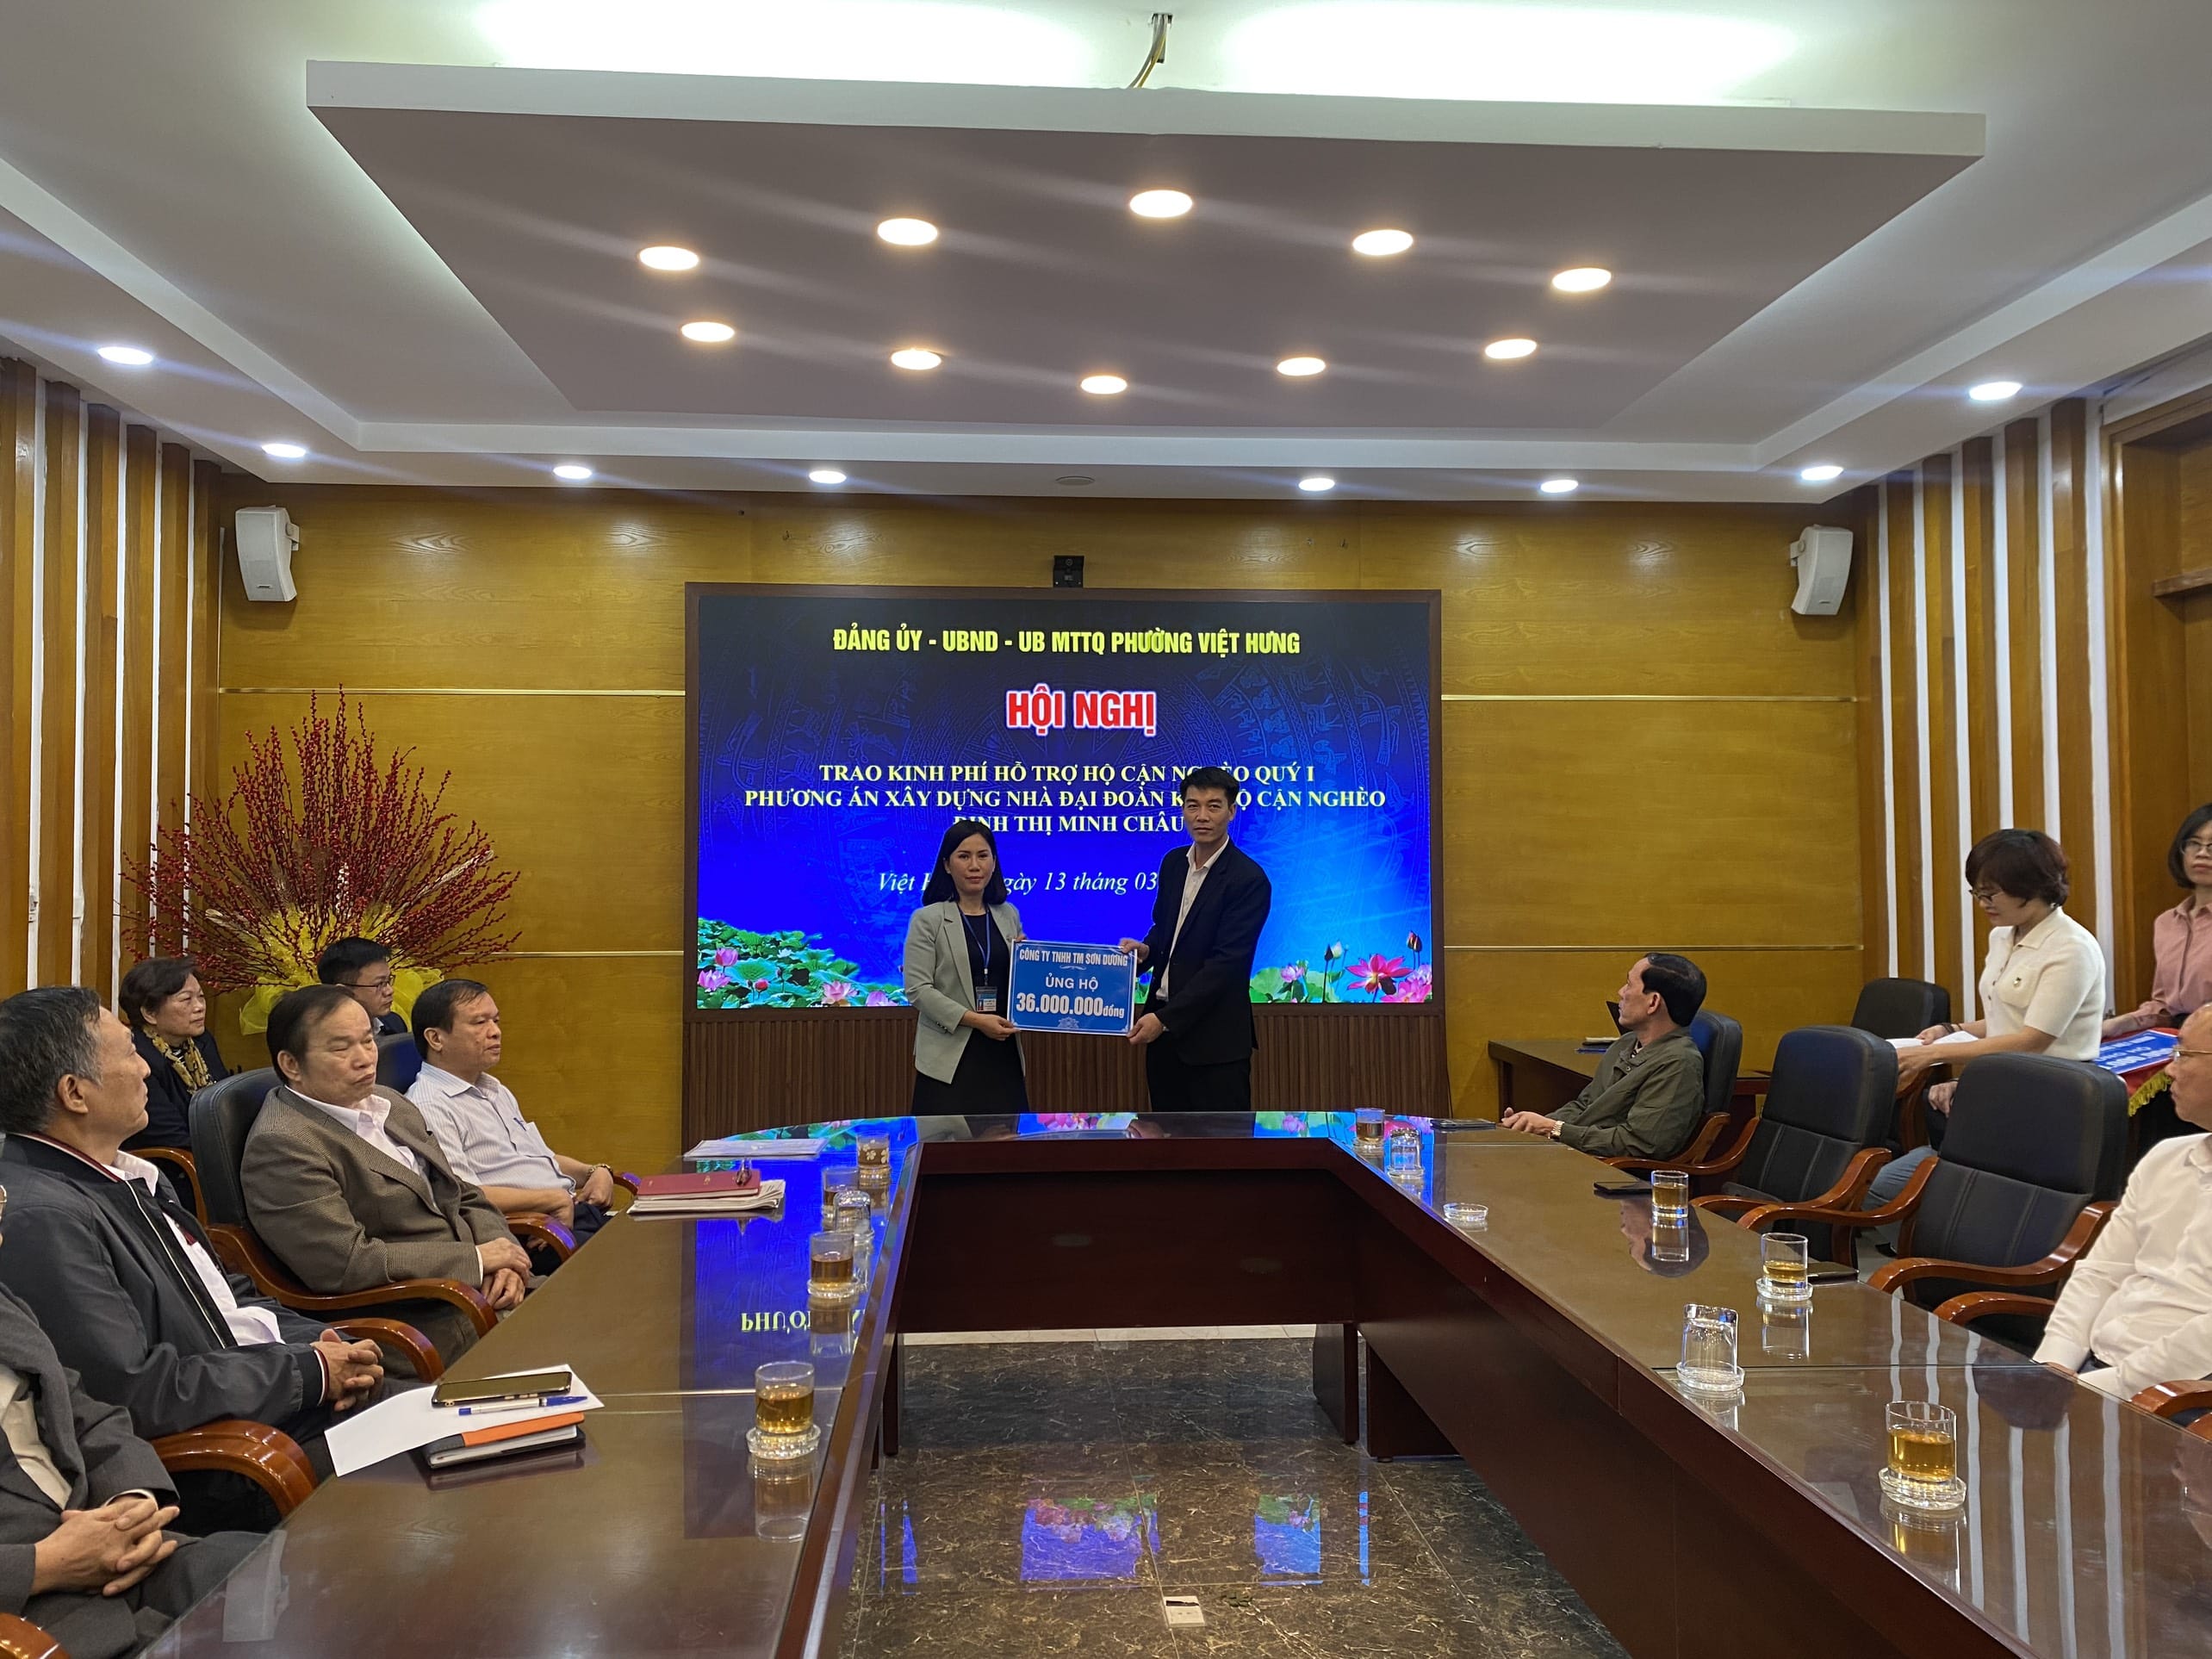 Đại diện Công ty TNHH Thương mại Sơn Dương - Phó Giám đốc ông Ngô Tùng Hiệp lên trao kinh phí hỗ trợ